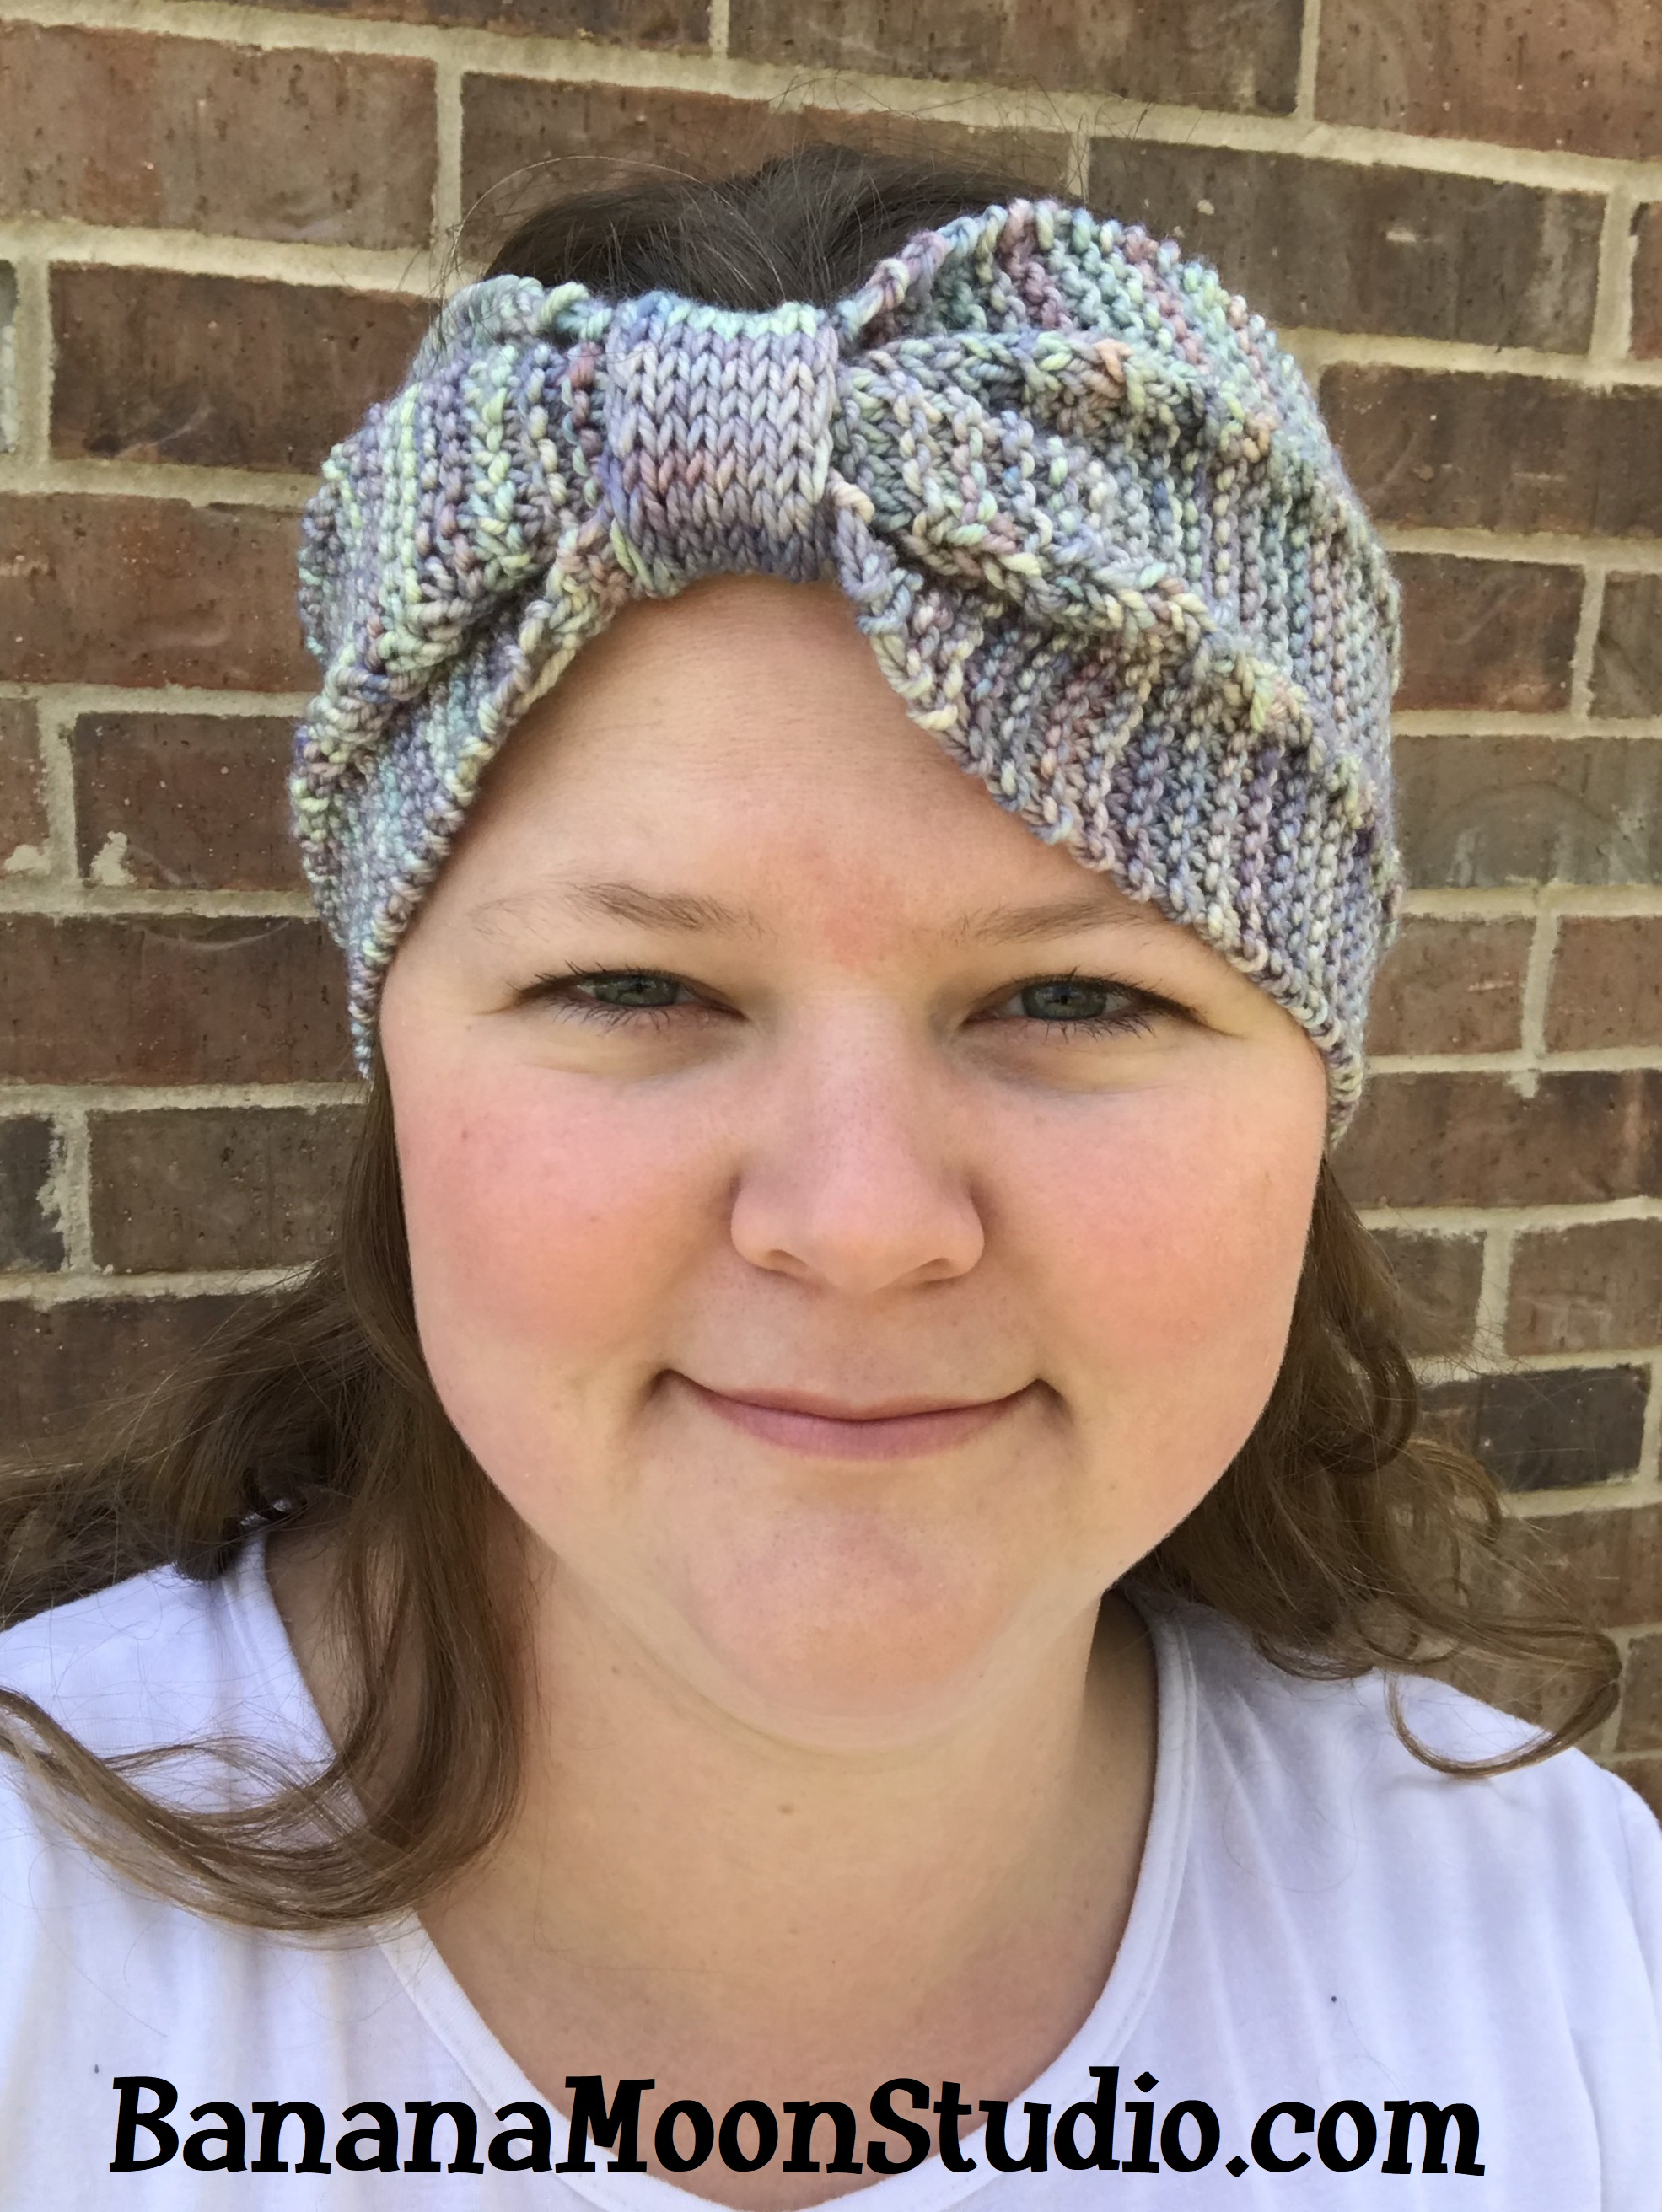 Knit Headband Pattern Knit Headband Pattern April Garwood Of Banana Moon Studio 7